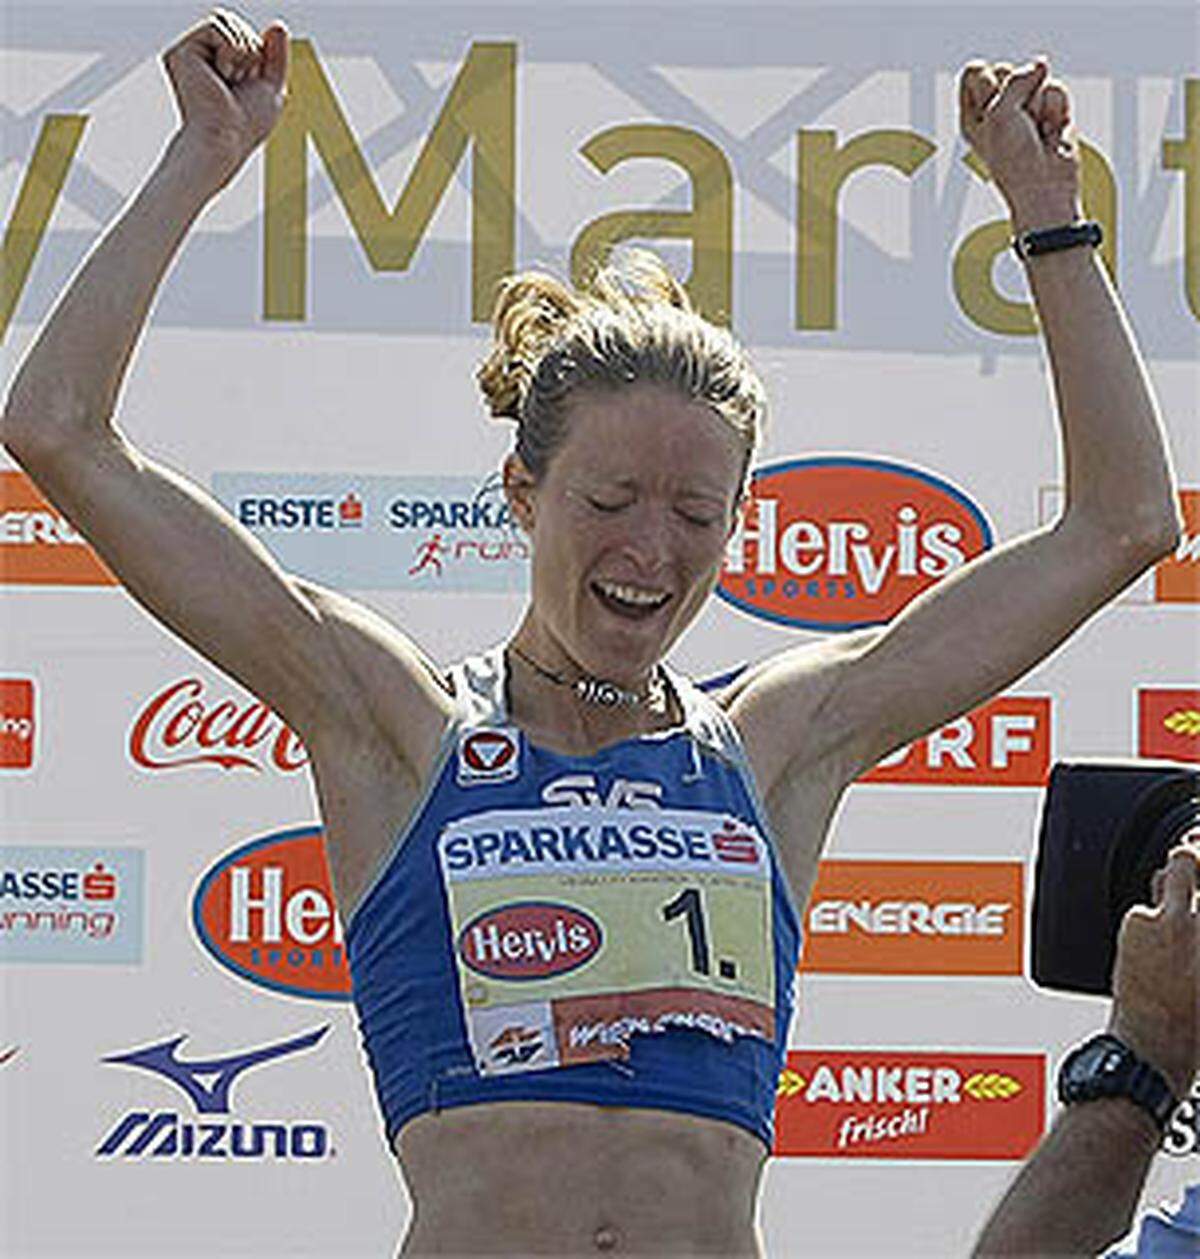 Bei den Damen gewann die Österreicherin Andrea Mayr. Sie lief mit einer Zeit von 2:30:43 Stunden österreichischen Rekord.